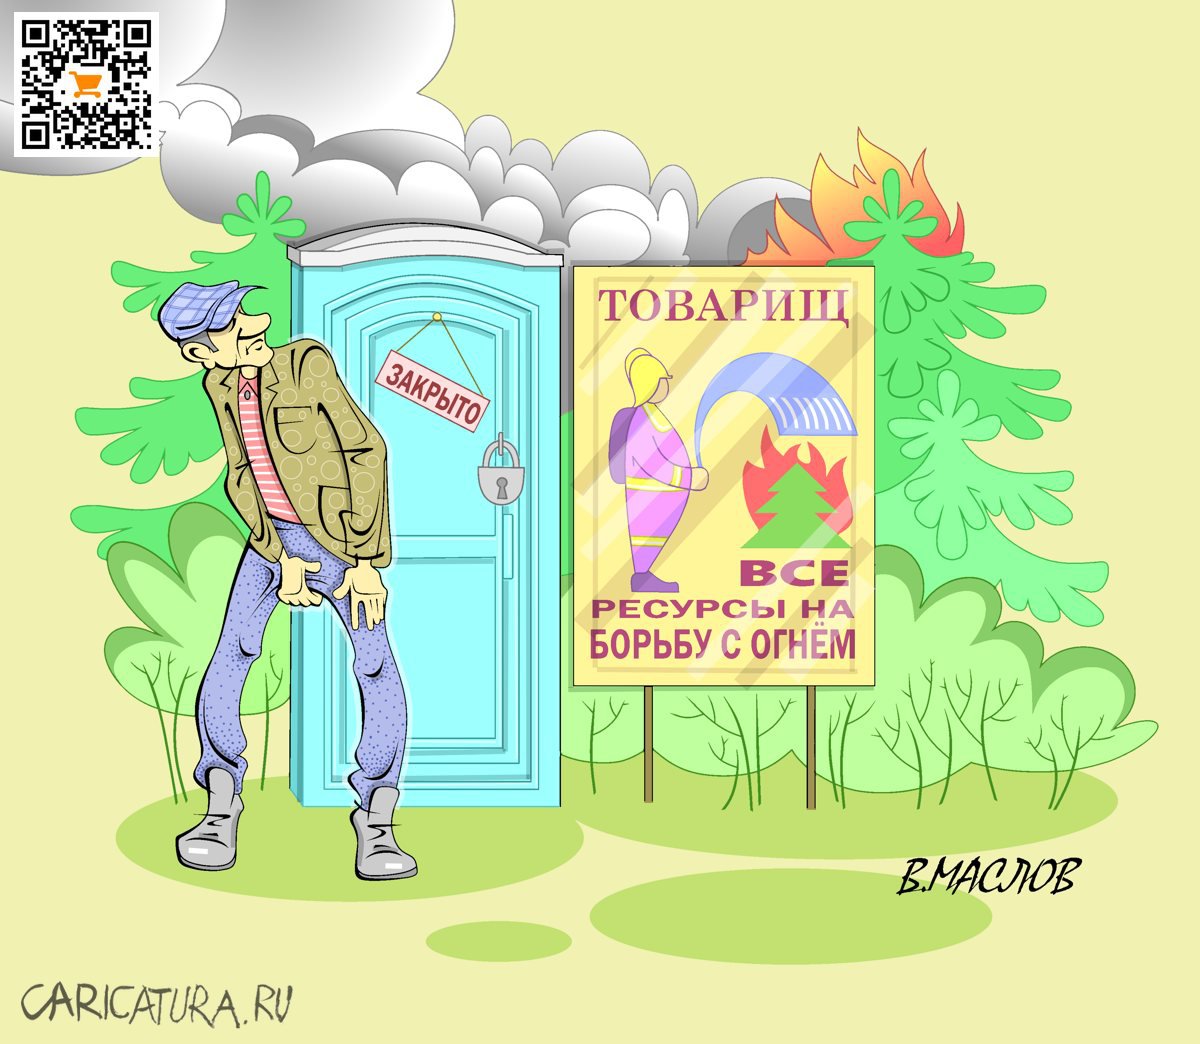 Карикатура "Все на борьбу с пожарами", Виталий Маслов